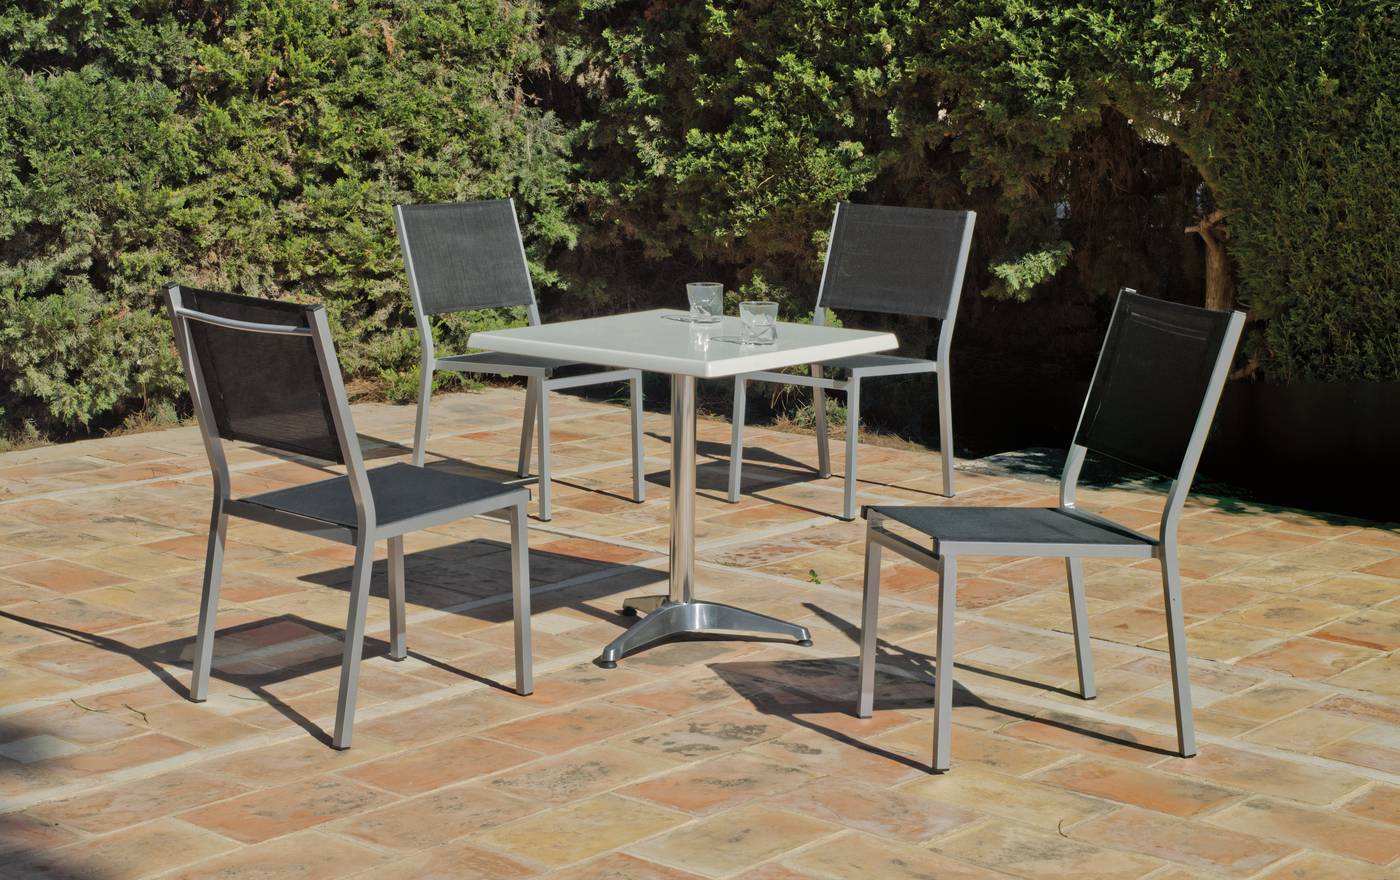 Conjunto aluminio: mesa cuadrada de aluminio, con tablero de Hevegalite  de 70 cm. y 4 sillas de aluminio color plata y textilen color gris